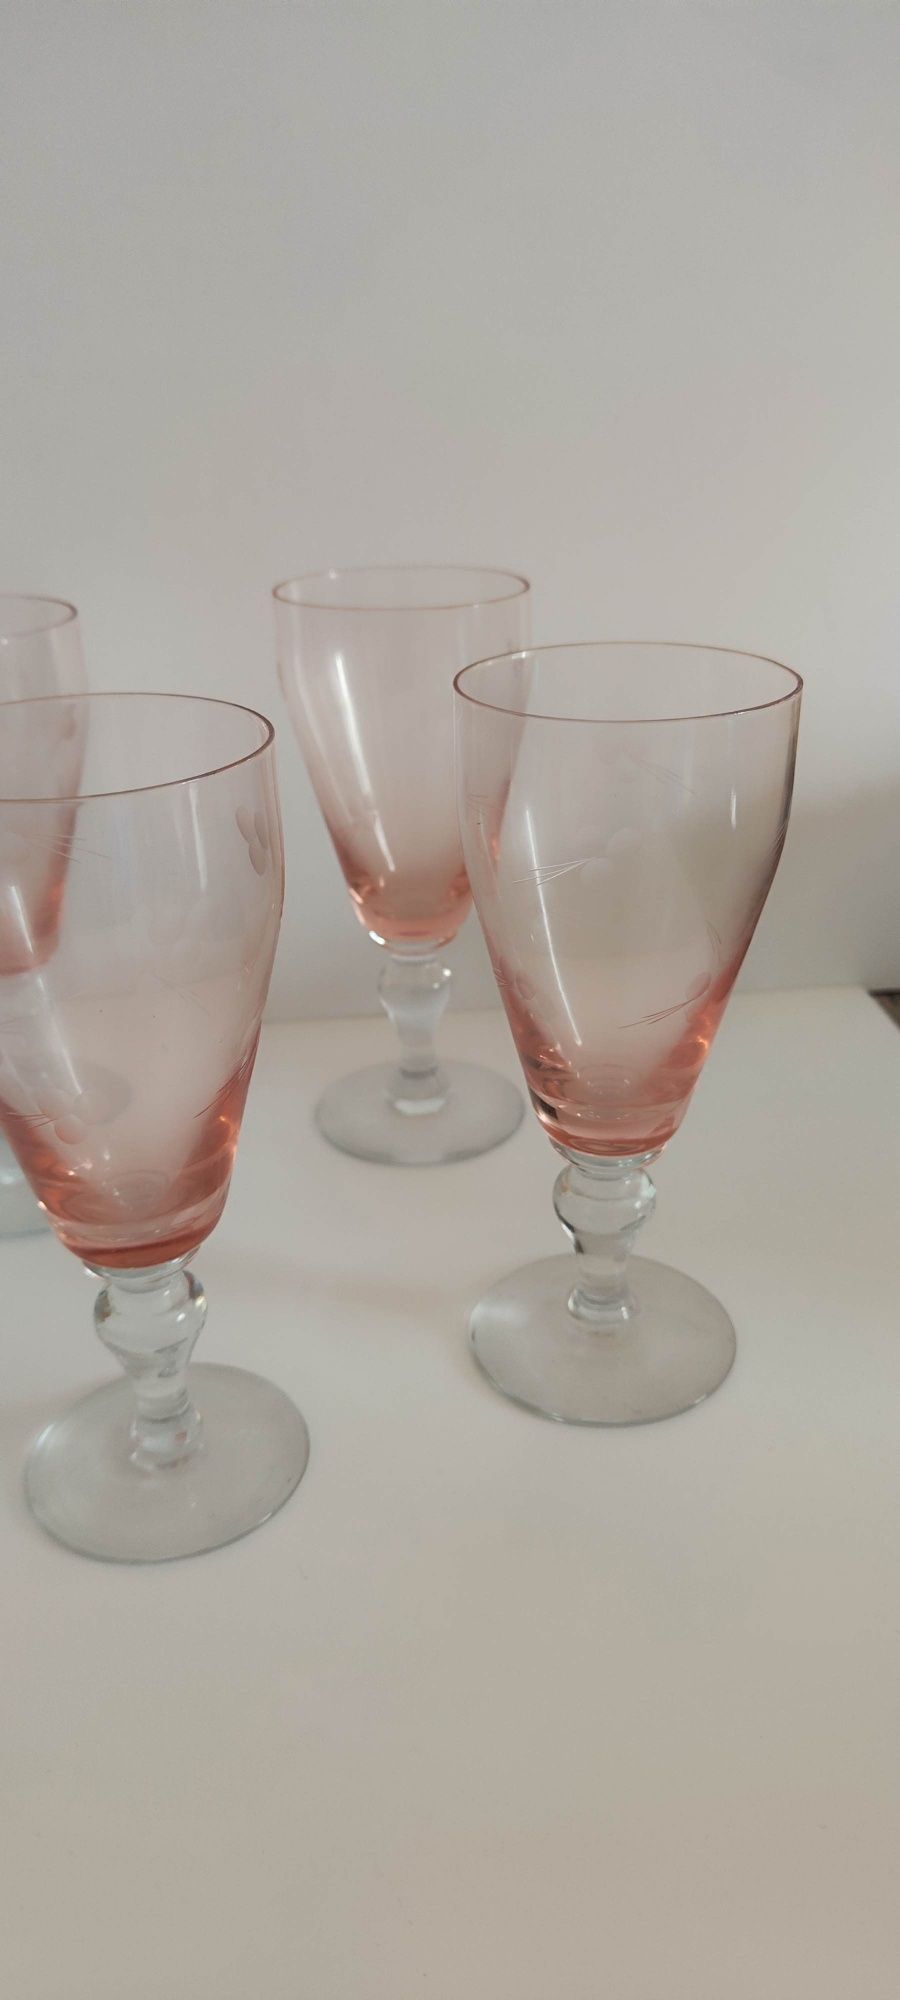 Conjunto de 10 copos cor-de-rosa biselados